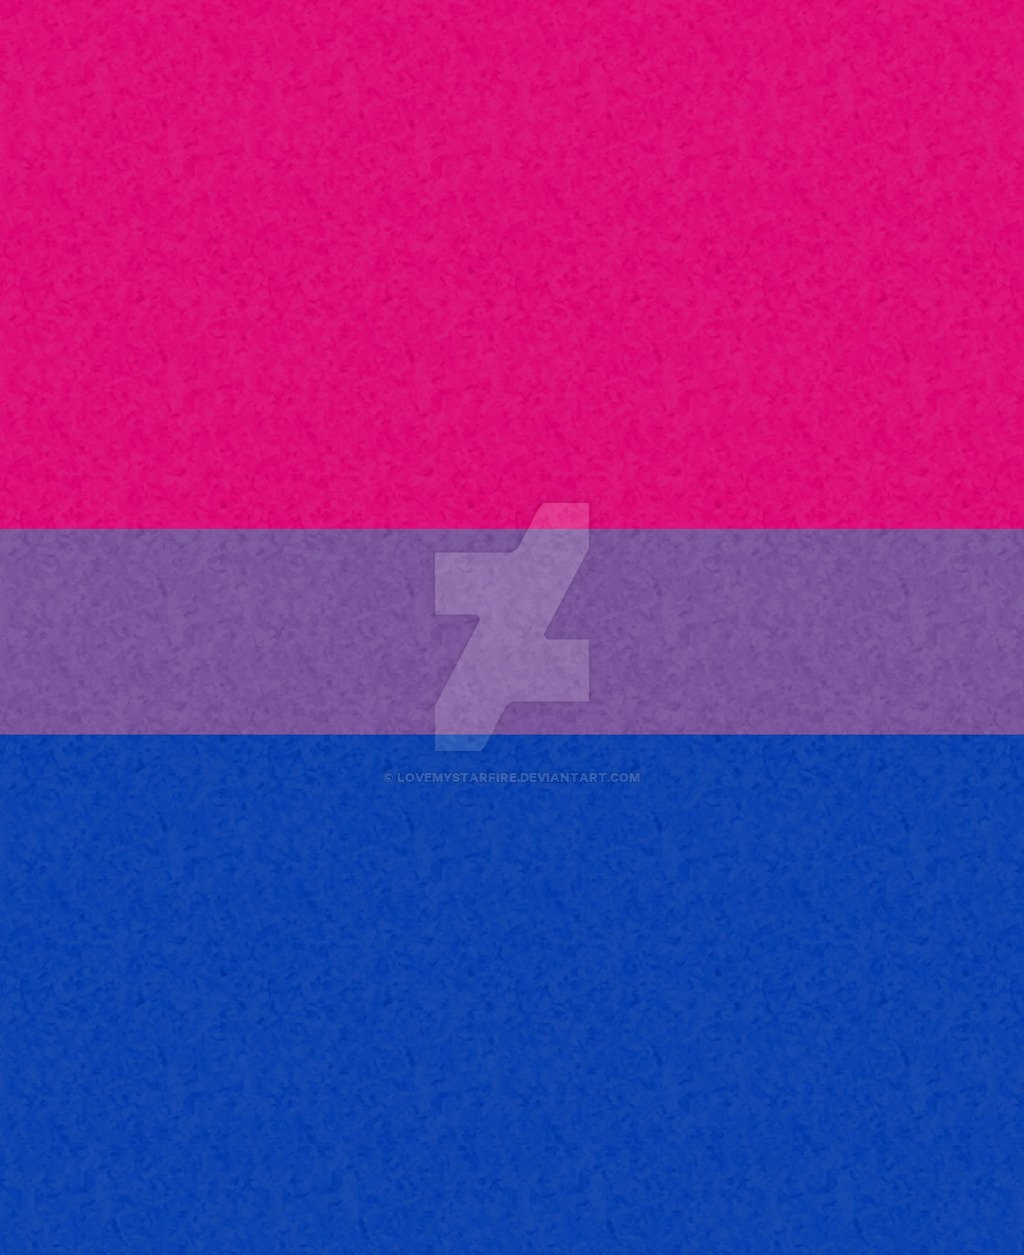  large bisexual pride flag pink purple and blue bisexual community